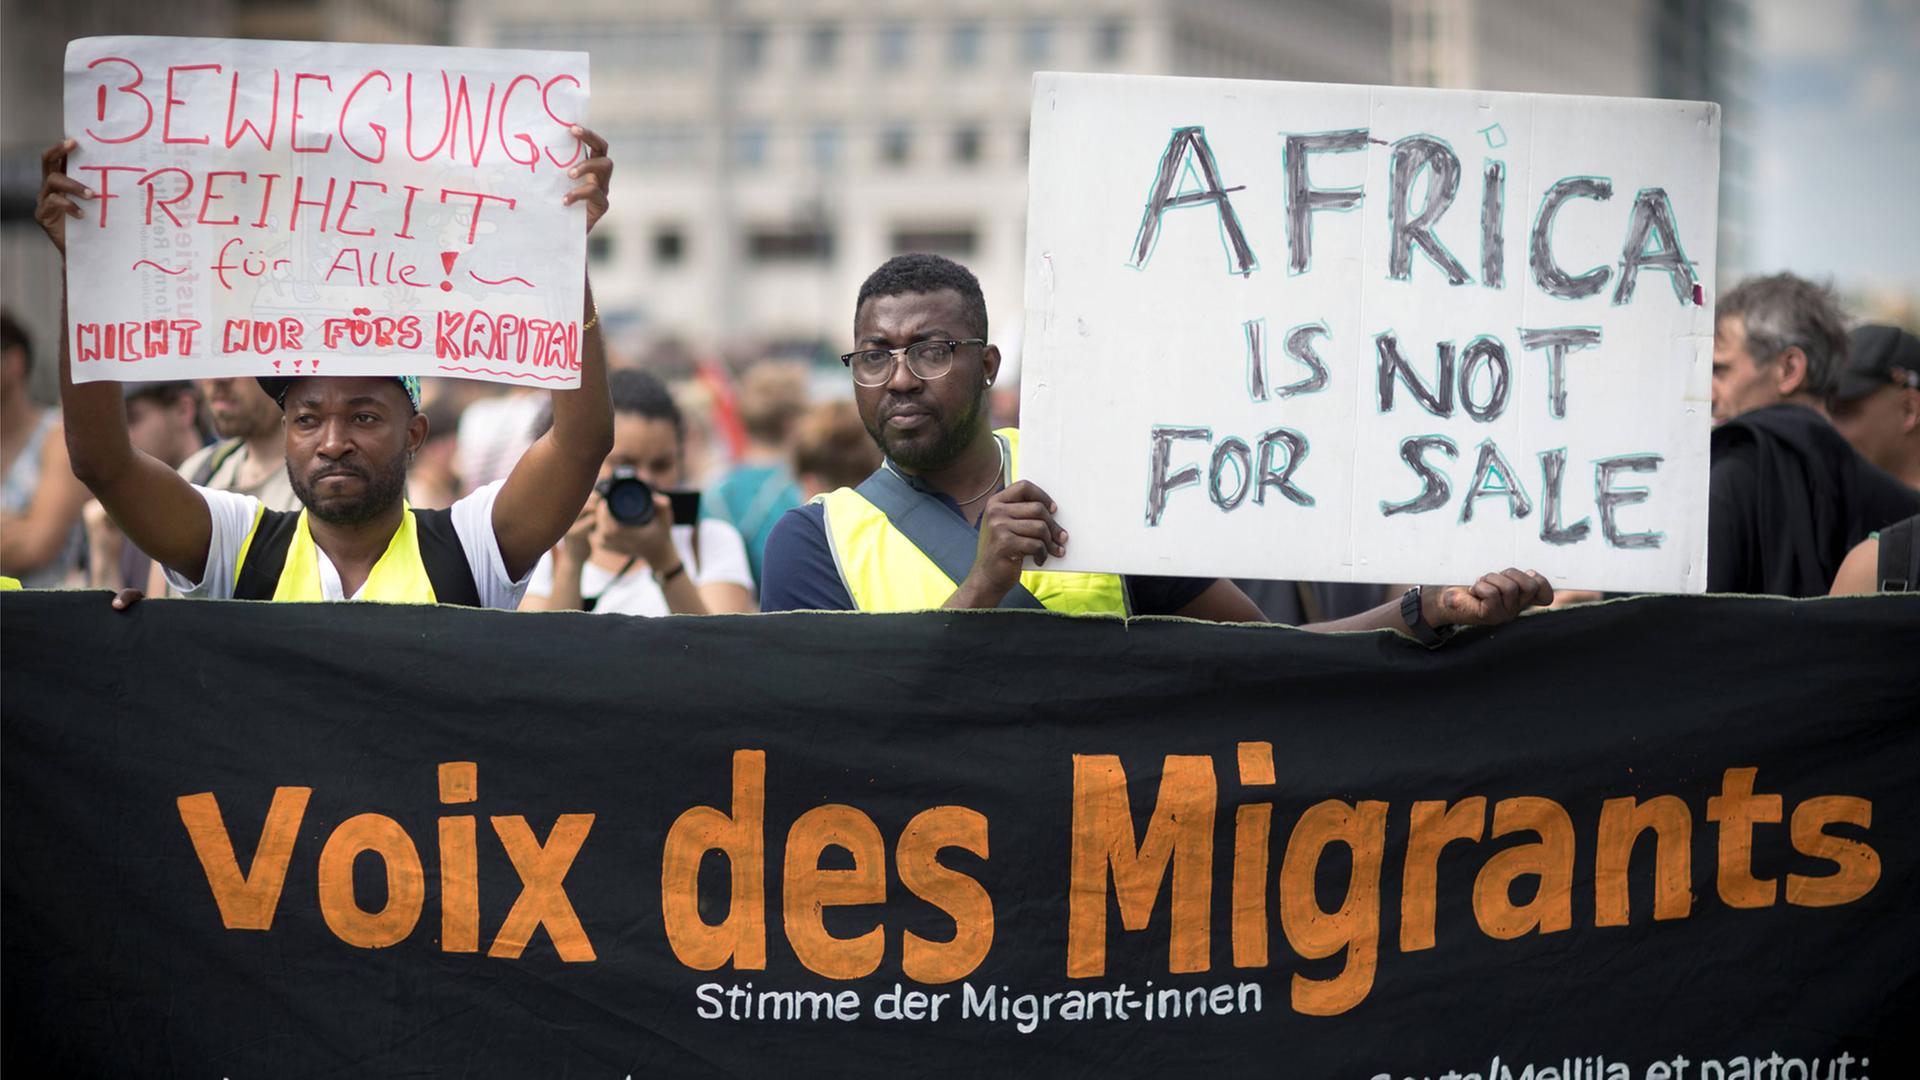 Vor Beginn der G20-Afrika Konferenz am 12.6.2017 wurde dagegen demonstriert. Die Menschen halten ein Schild mit der Aufschrift "Africa is not for sale" hoch. Ein anderes Schild zeigt die Aufschrift "Bewegungsfreiheit für alle – nicht nur fürs Kapital". Auf einem schwarzen Plakat ist außerdem zu lesen "Stimme der Migrant-innen" .